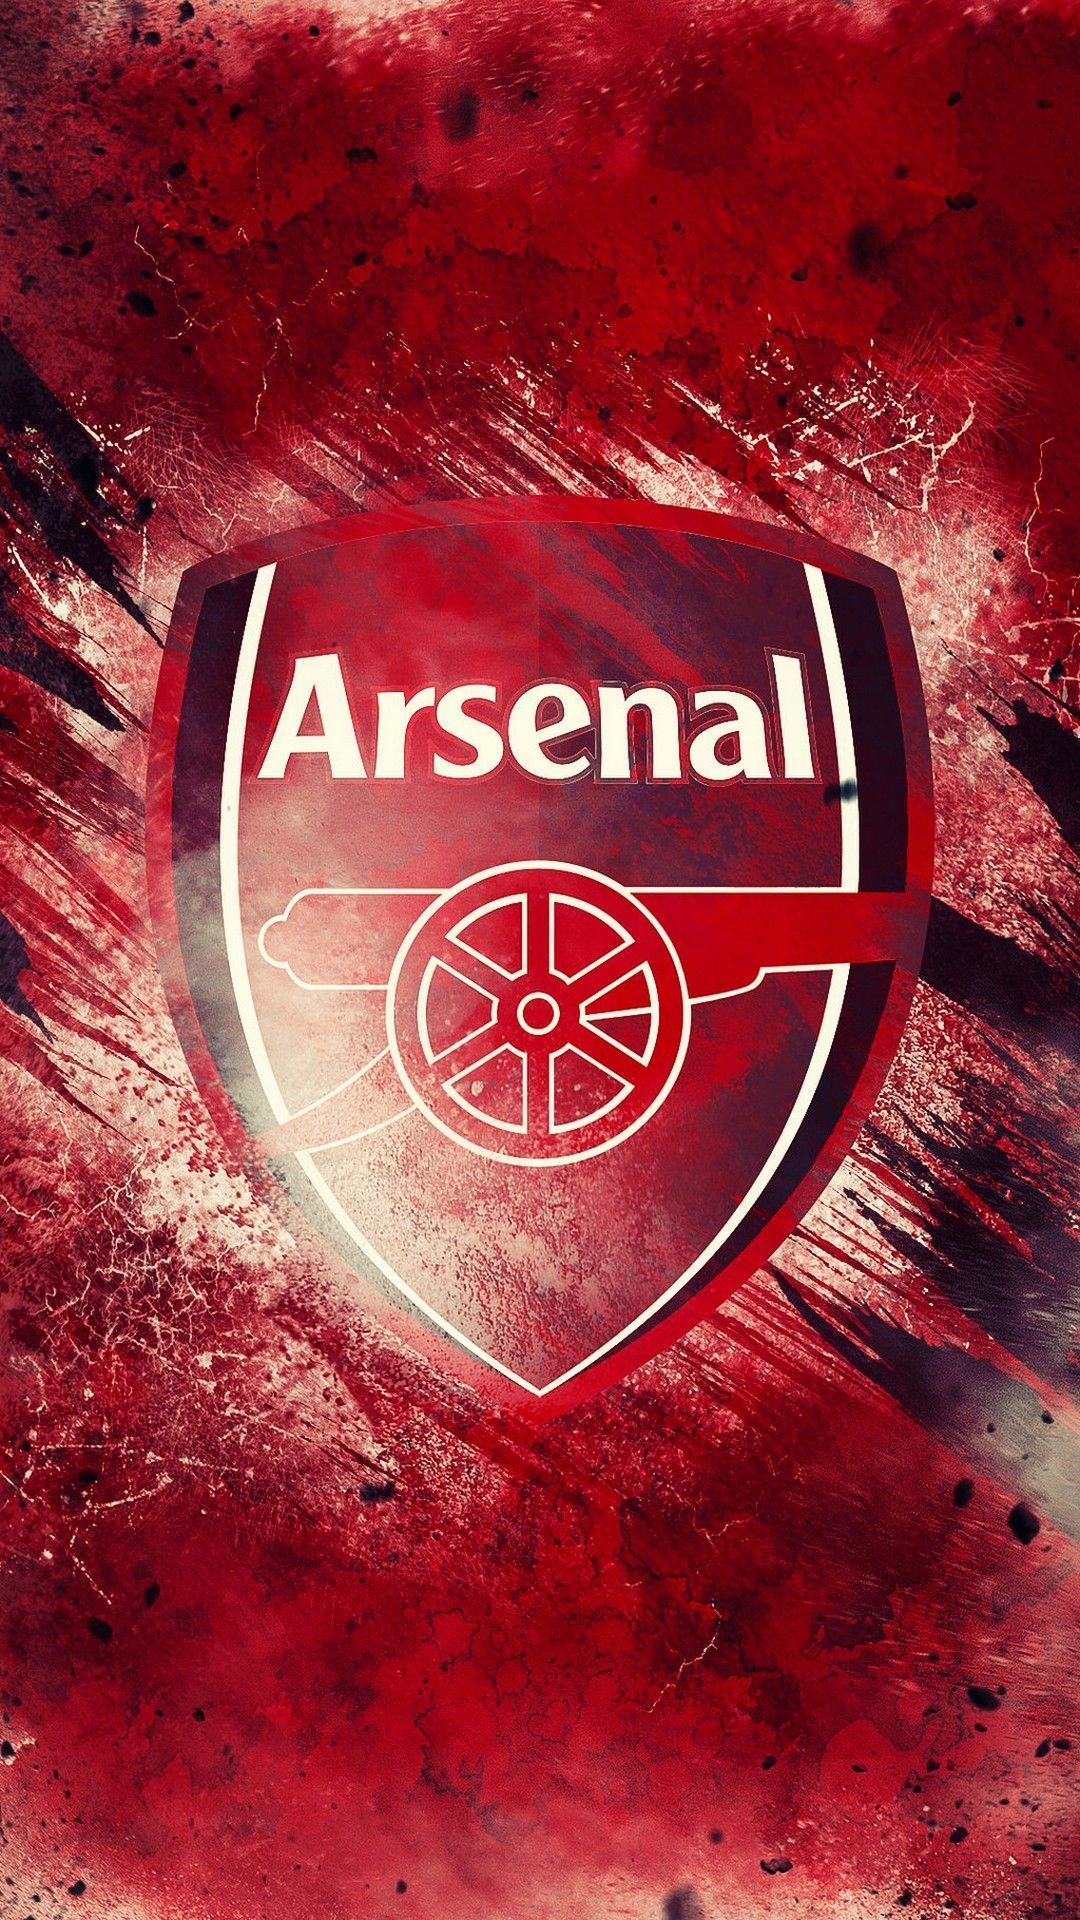 Arsenal Wallpaper Free Arsenal Background